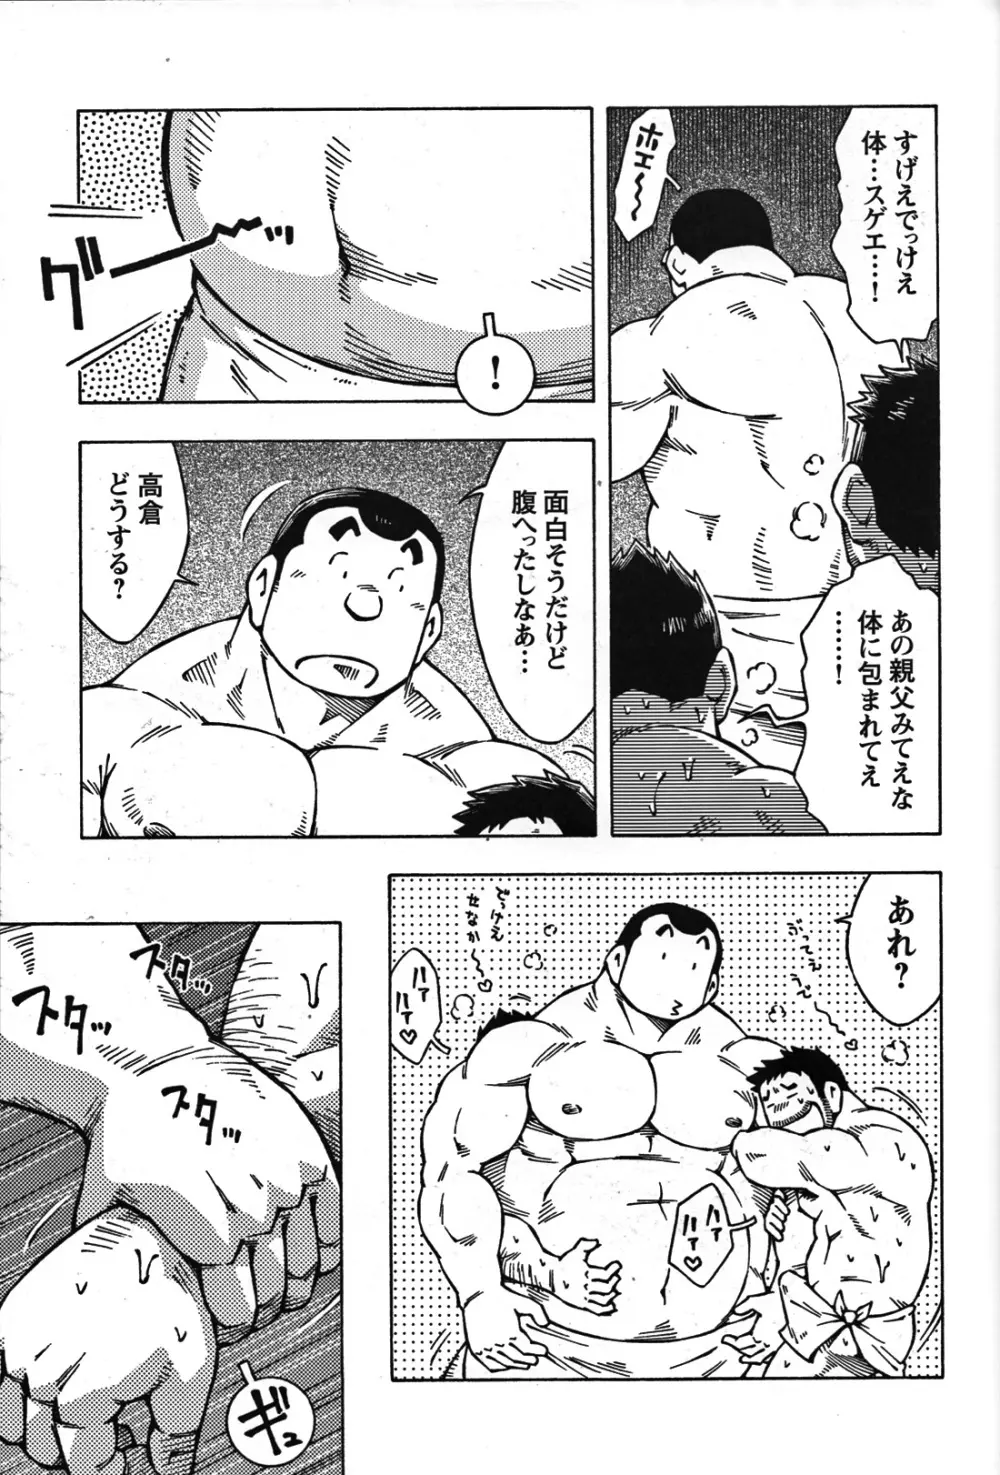 Comic G-men Gaho No.07 52ページ